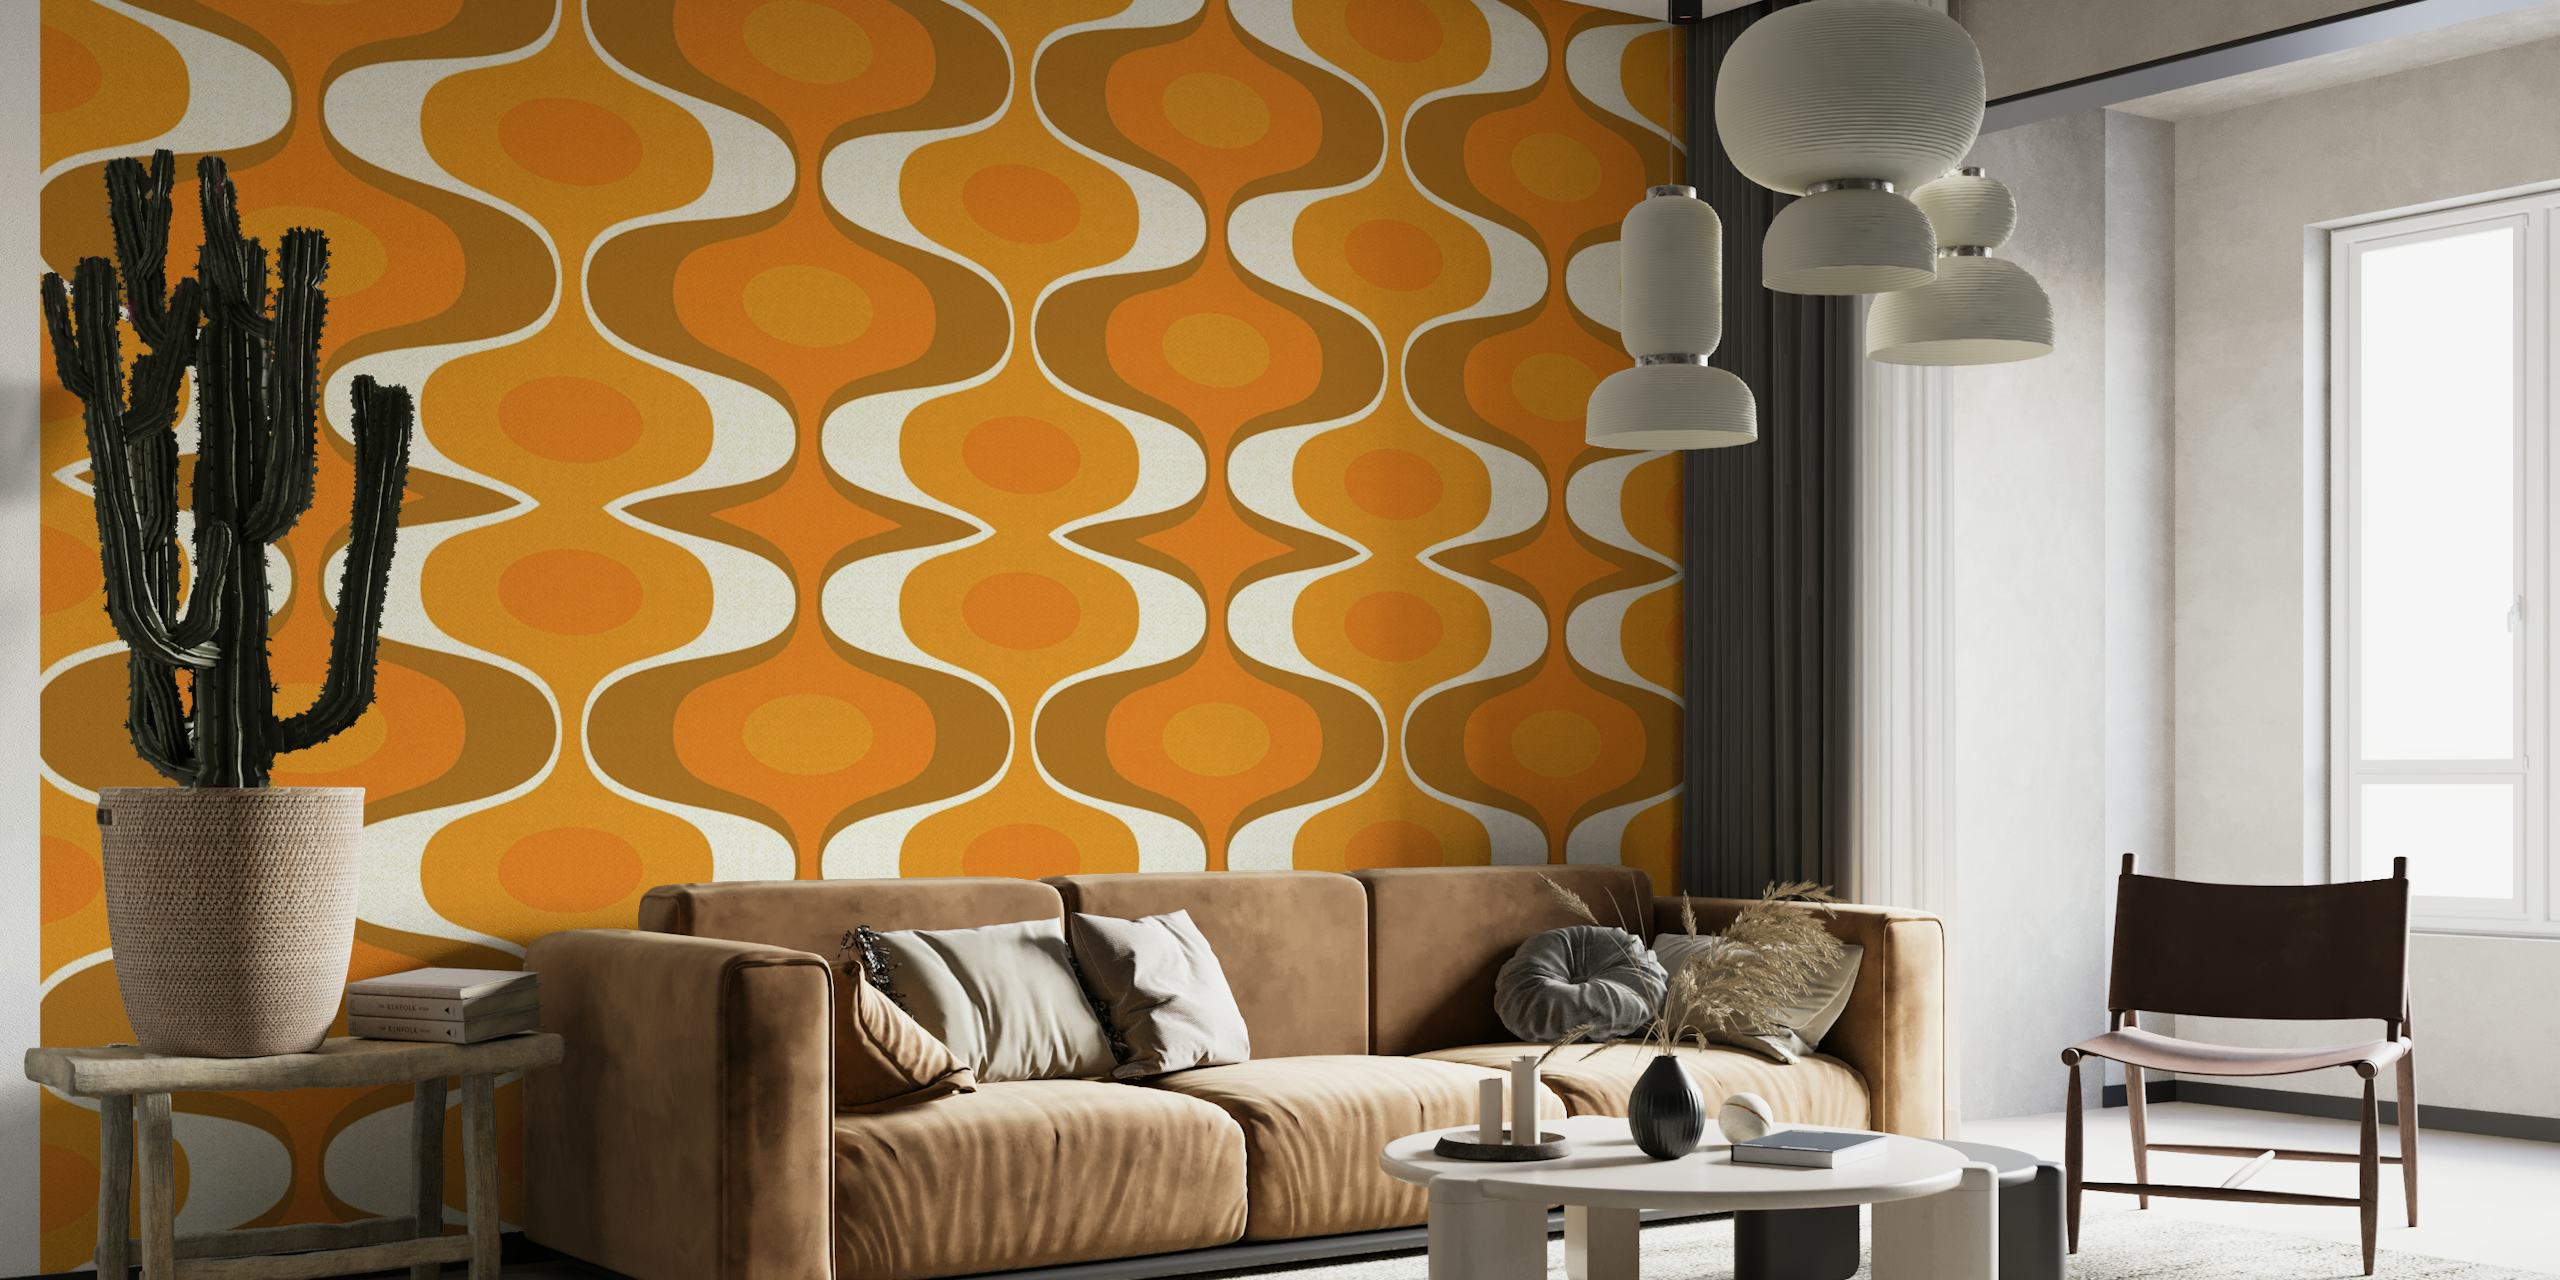 Väggmålning med geometriskt mönster med orange och jordnära toner som återspeglar 70-talets retrostil